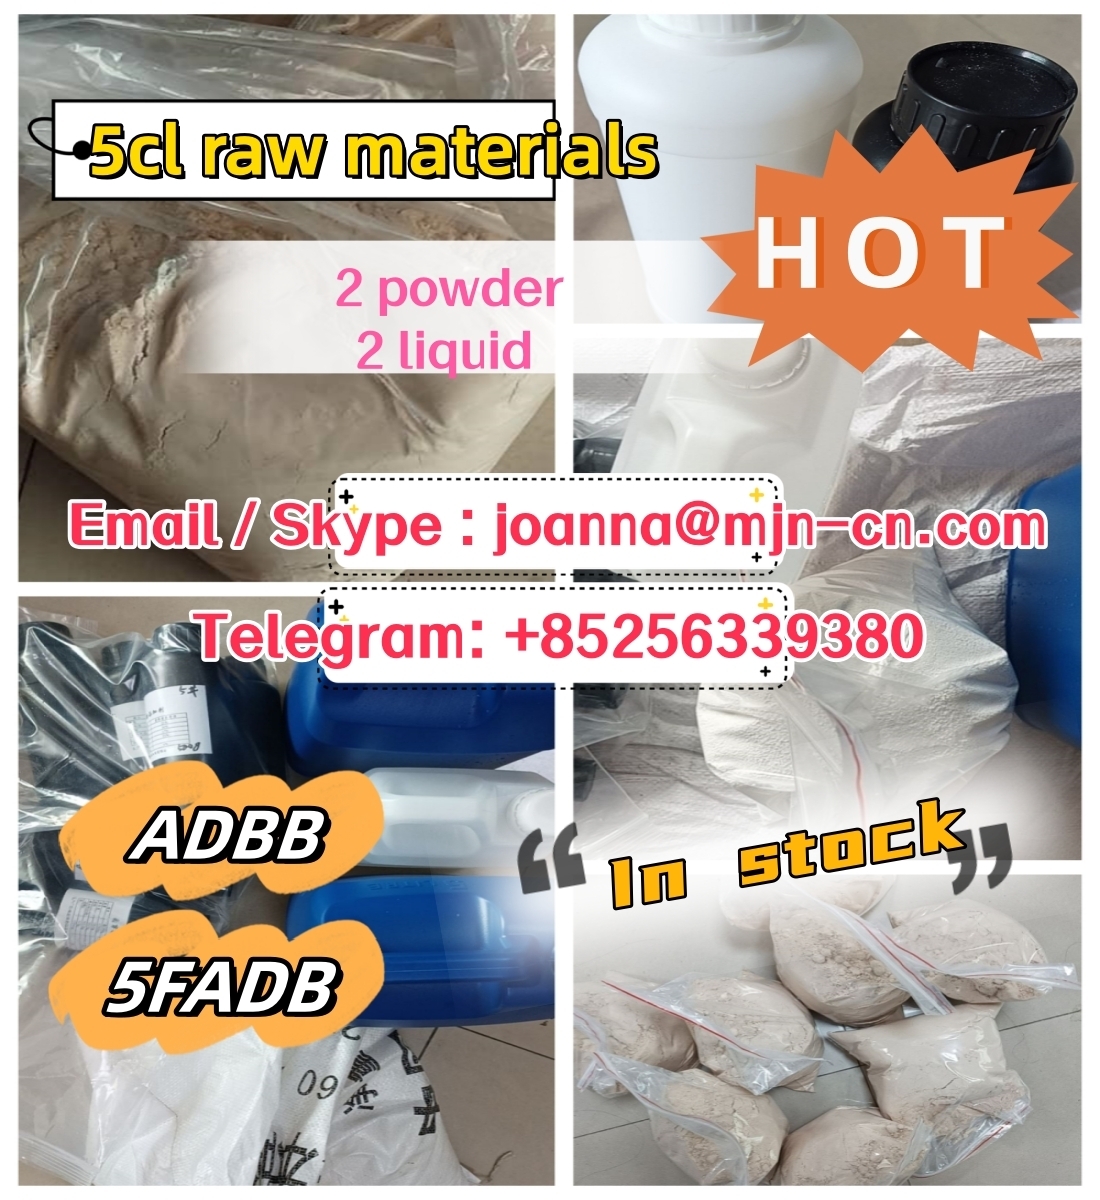 Raw Materials 5CLADBA supplier Telegram : +85256339380-1-2-3-4 2024-06-27